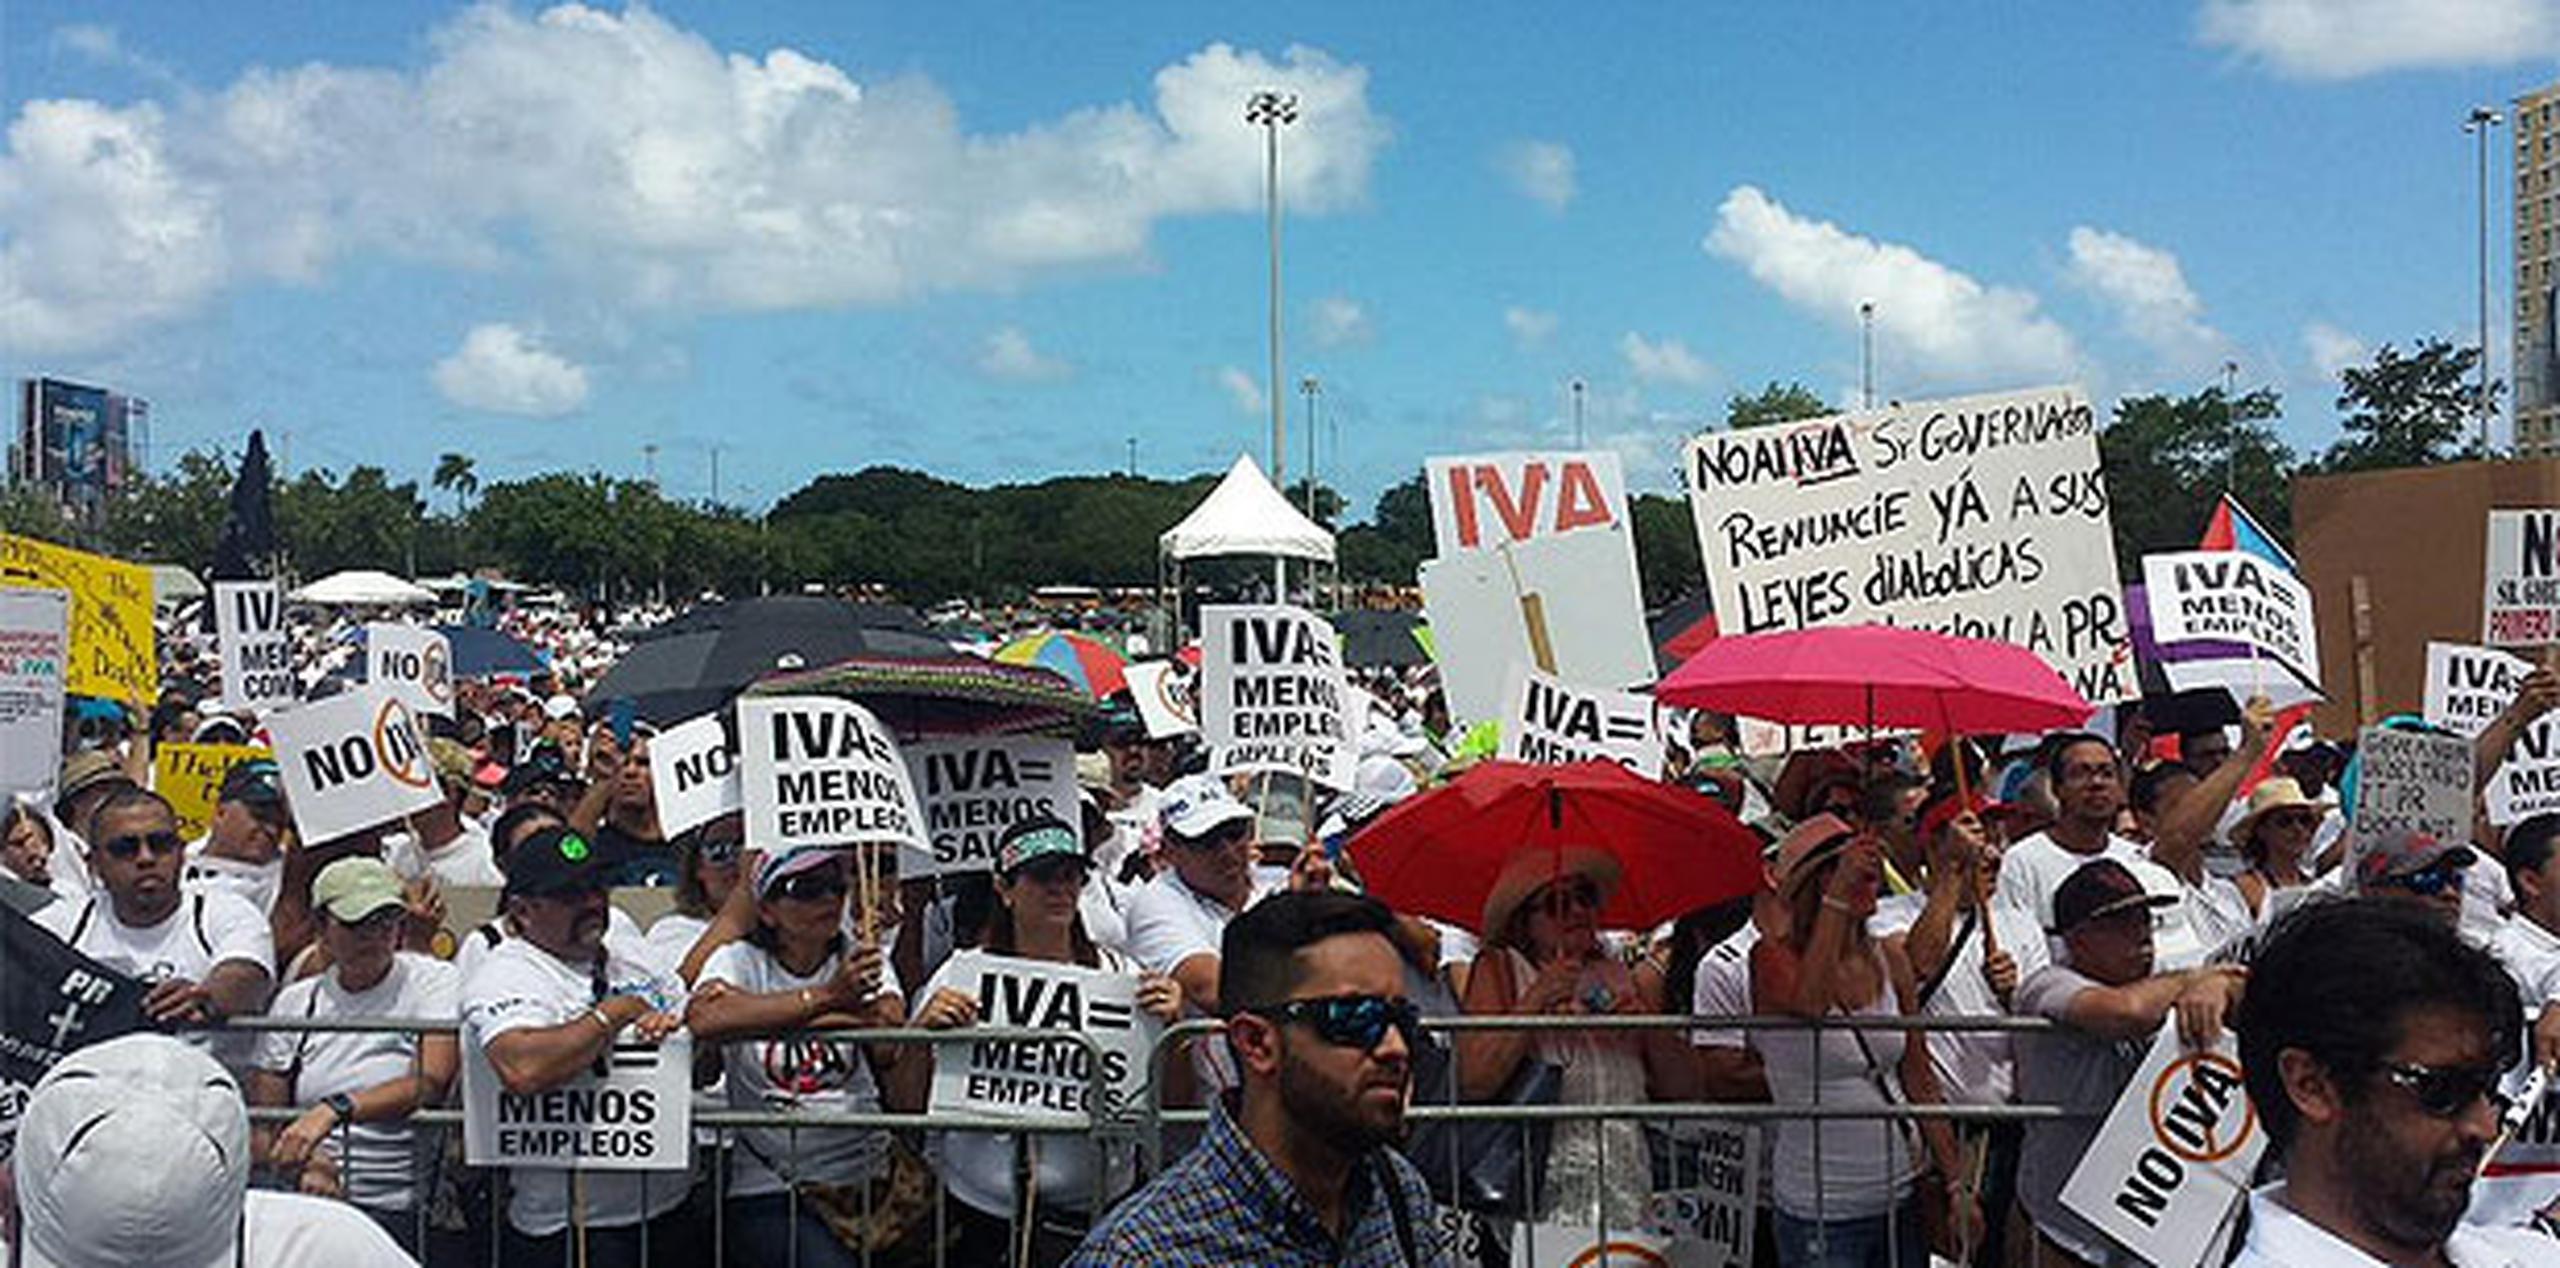 Los manifestantes se congregaron frente a una tarima colocada en el estacionamiento del complejo deportivo para escuchar consignas y mensajes en contra del IVA. (daniel.rivera@gfrmedia.com)